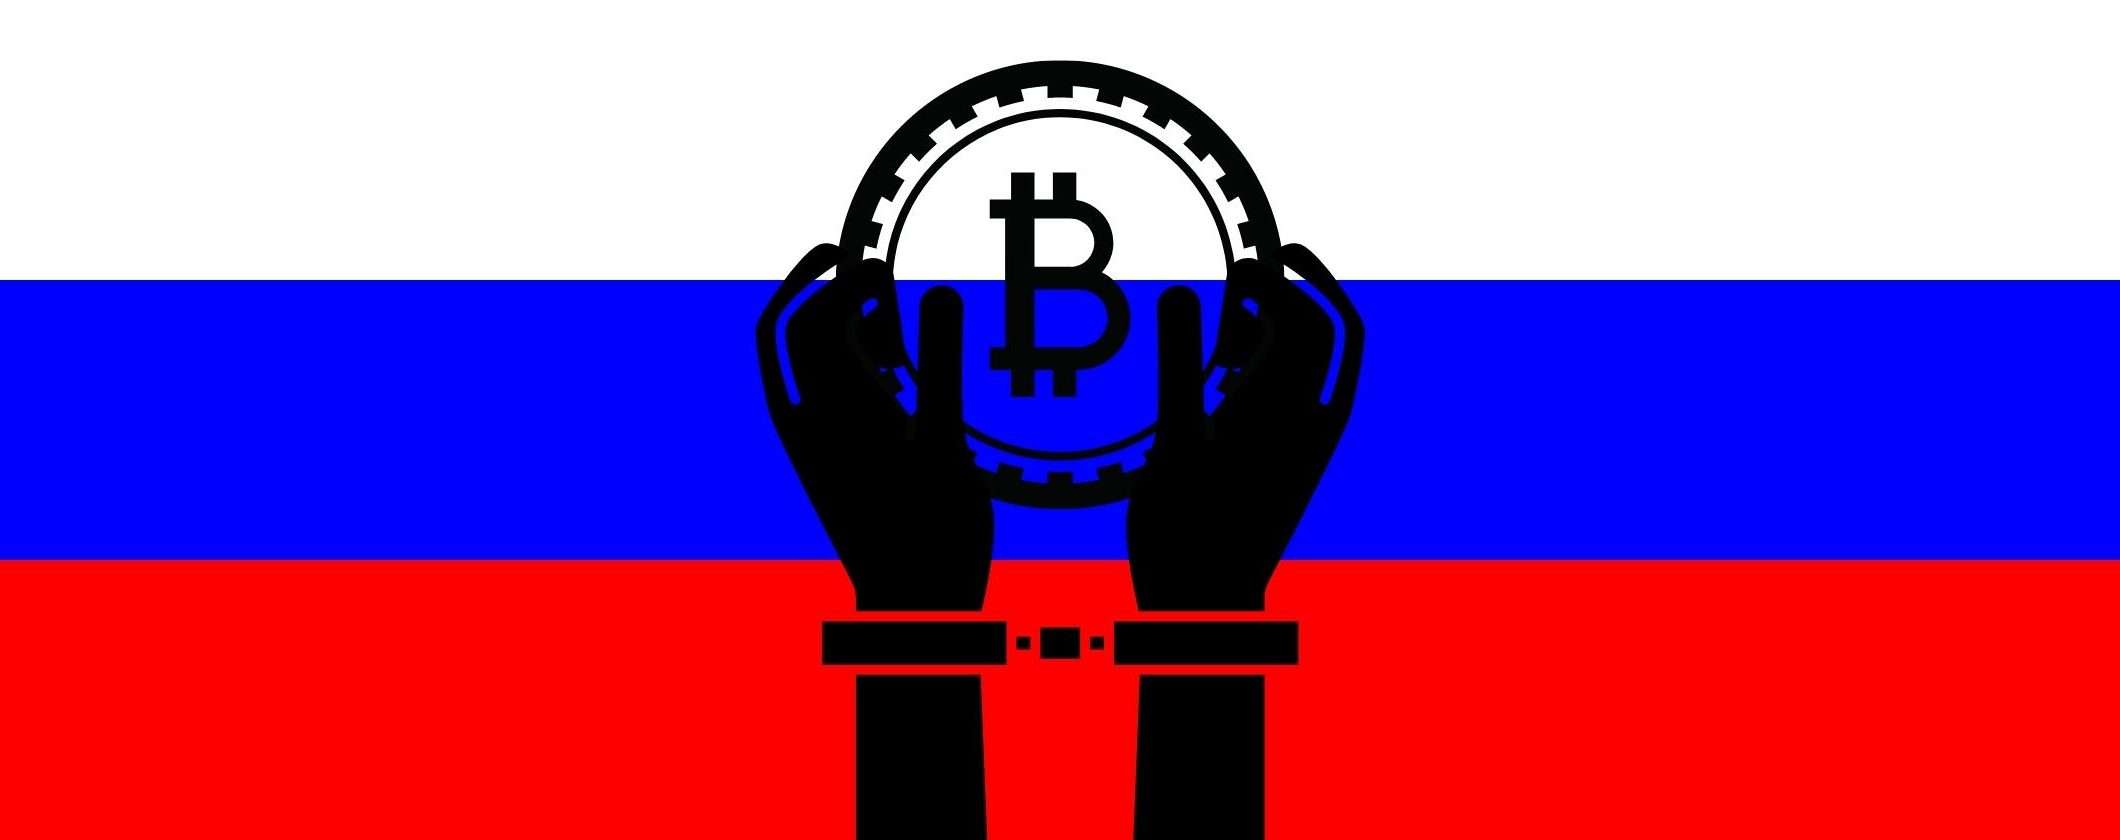 Criptovalute: la Russia sceglie la strada del rigore